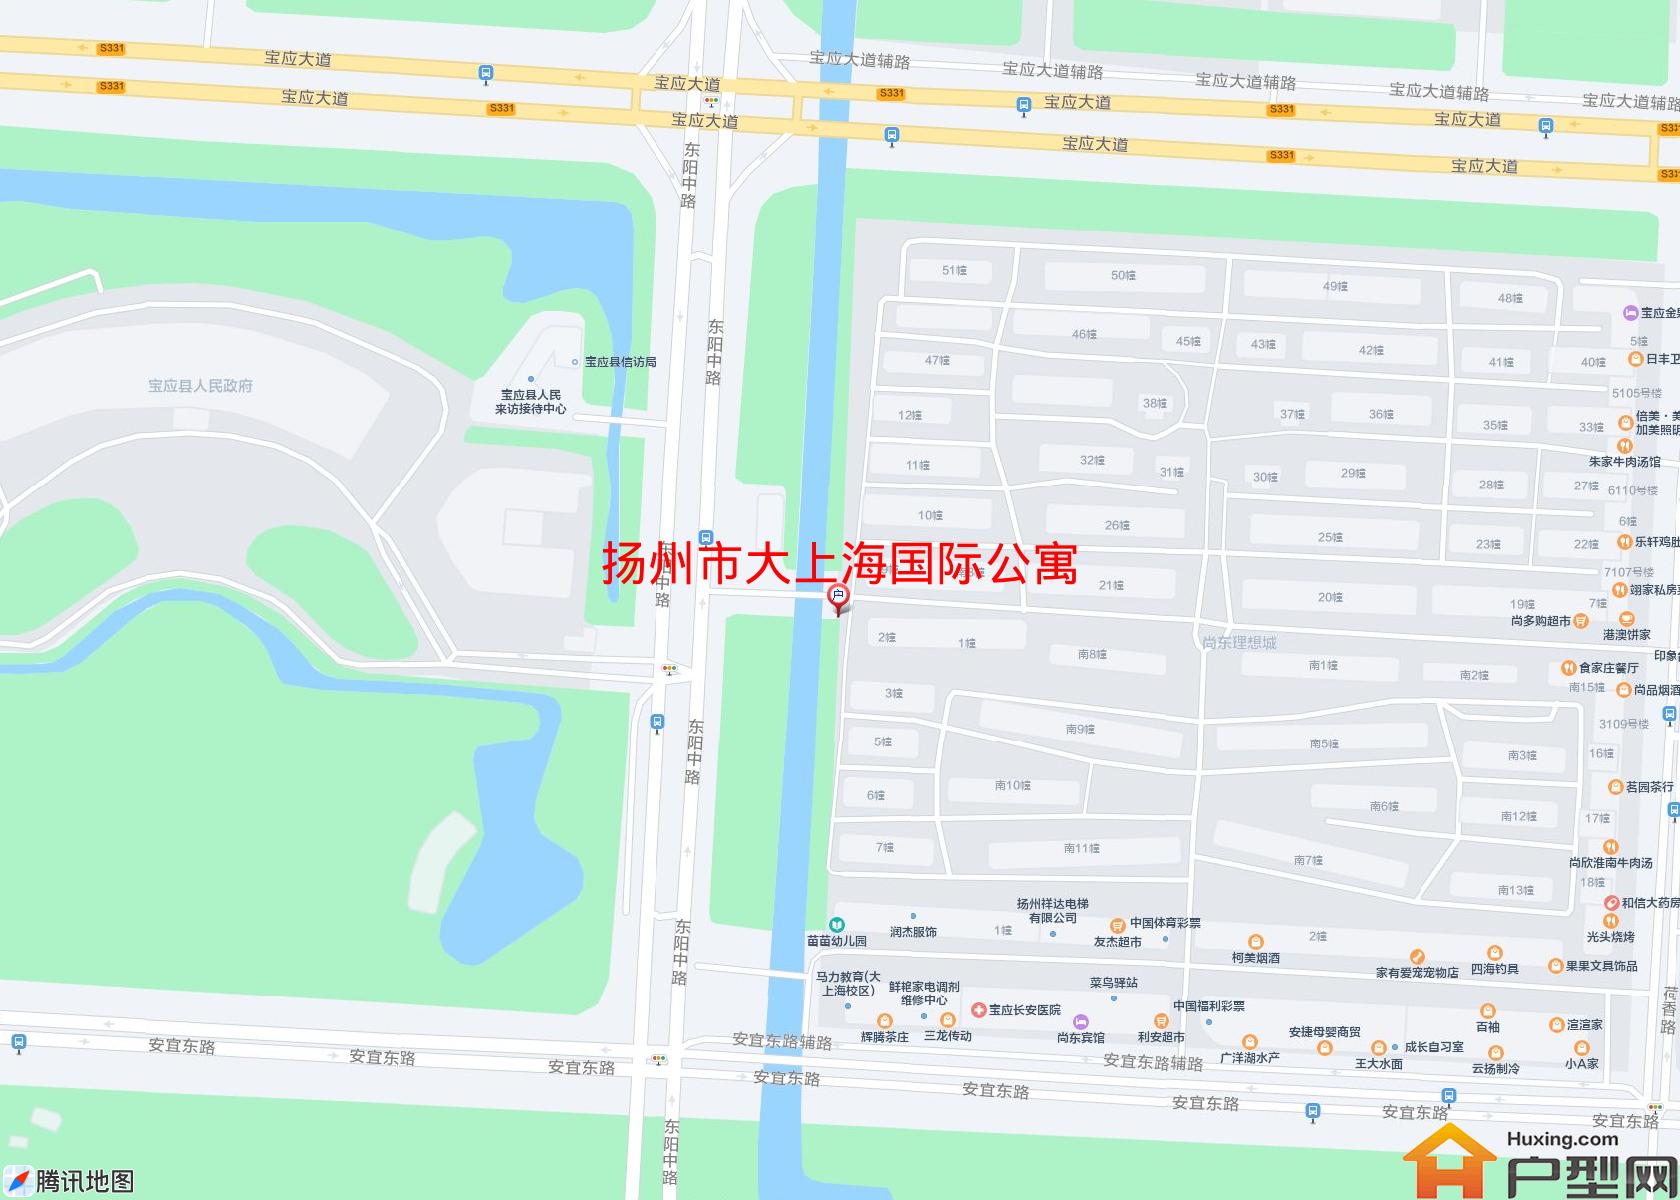 大上海国际公寓小区 - 户型网